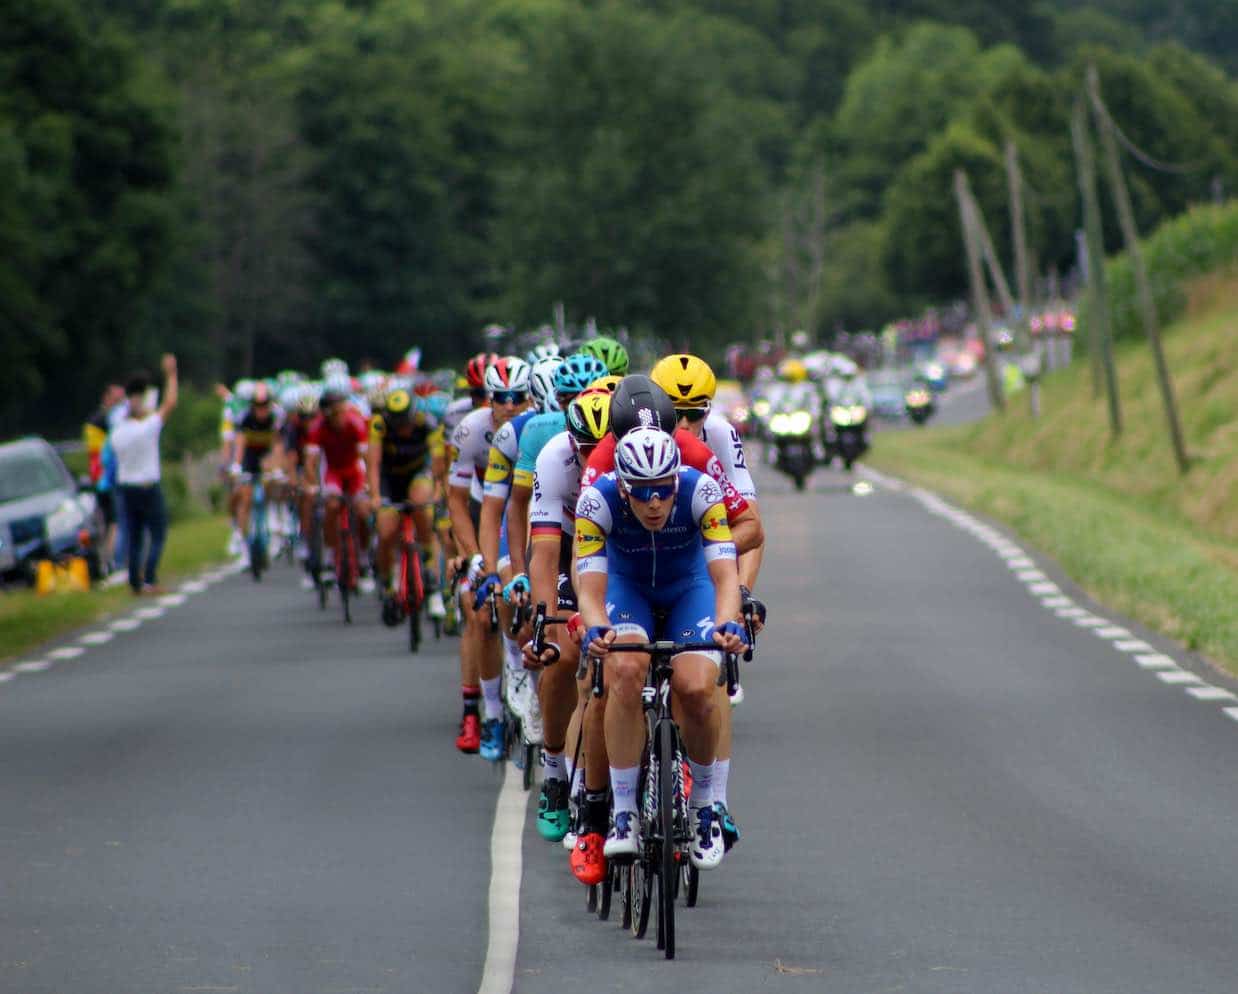 Teams participating in Tour de France 2022